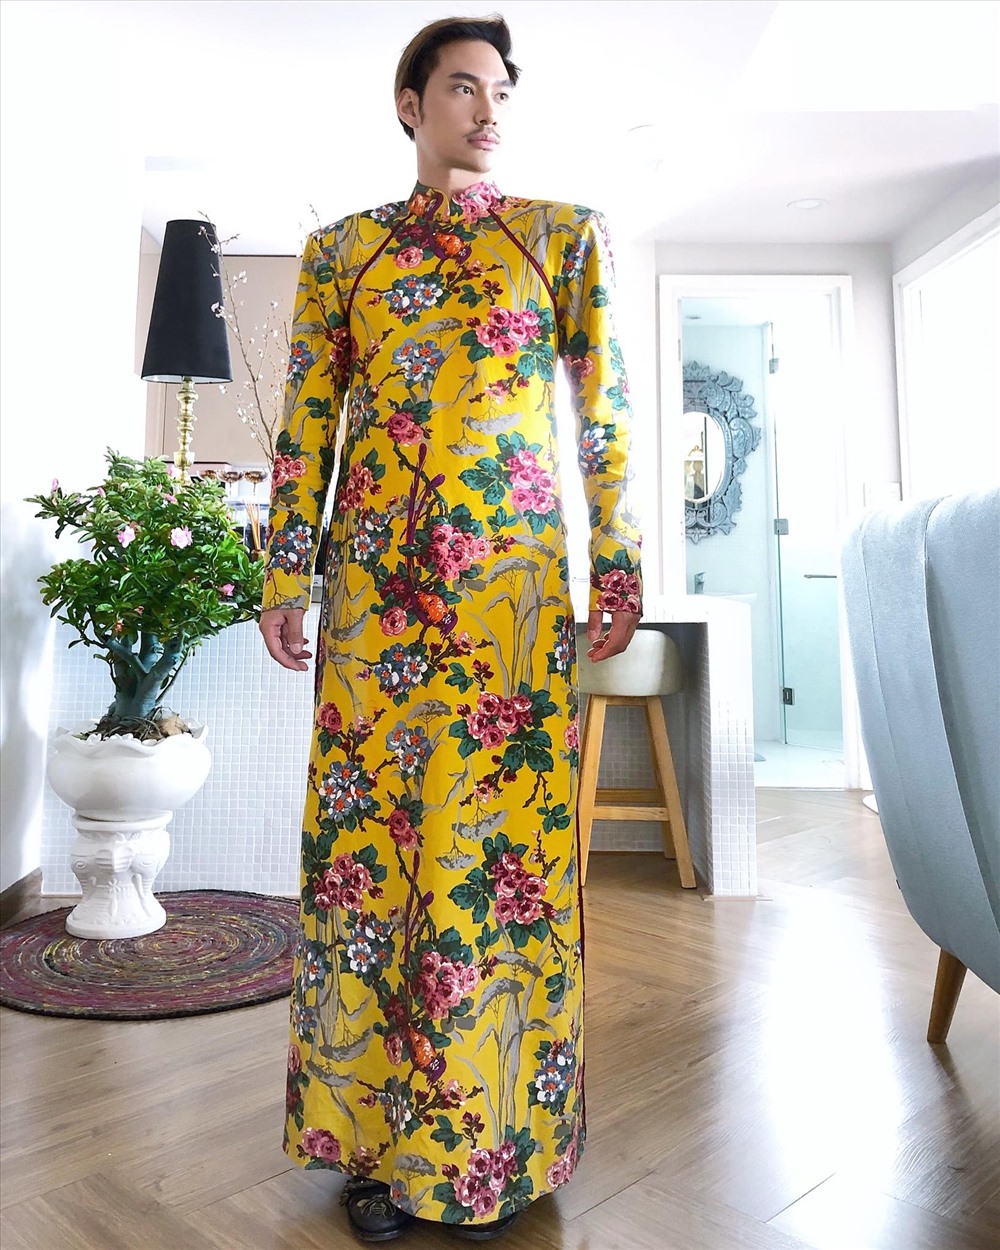 Nhà thiết kế Lý Quý Khánh hào hứng mặc bộ áo dài mà anh tự thiết kế nhân dịp Tết 